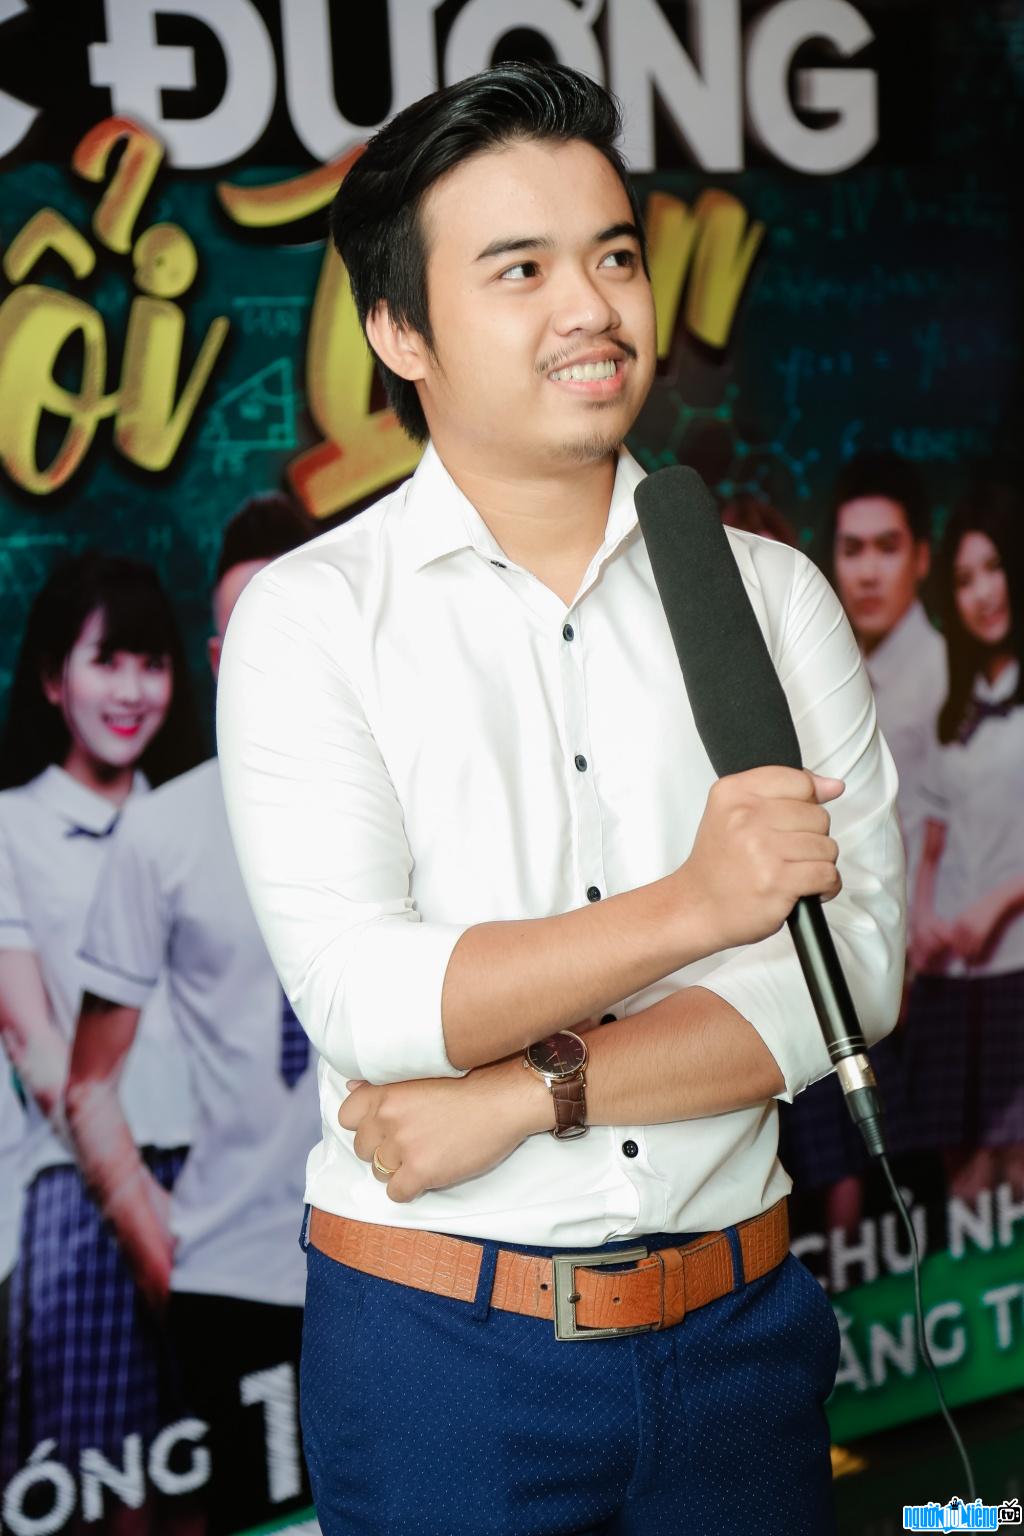 Image of Dinh Cong Hieu